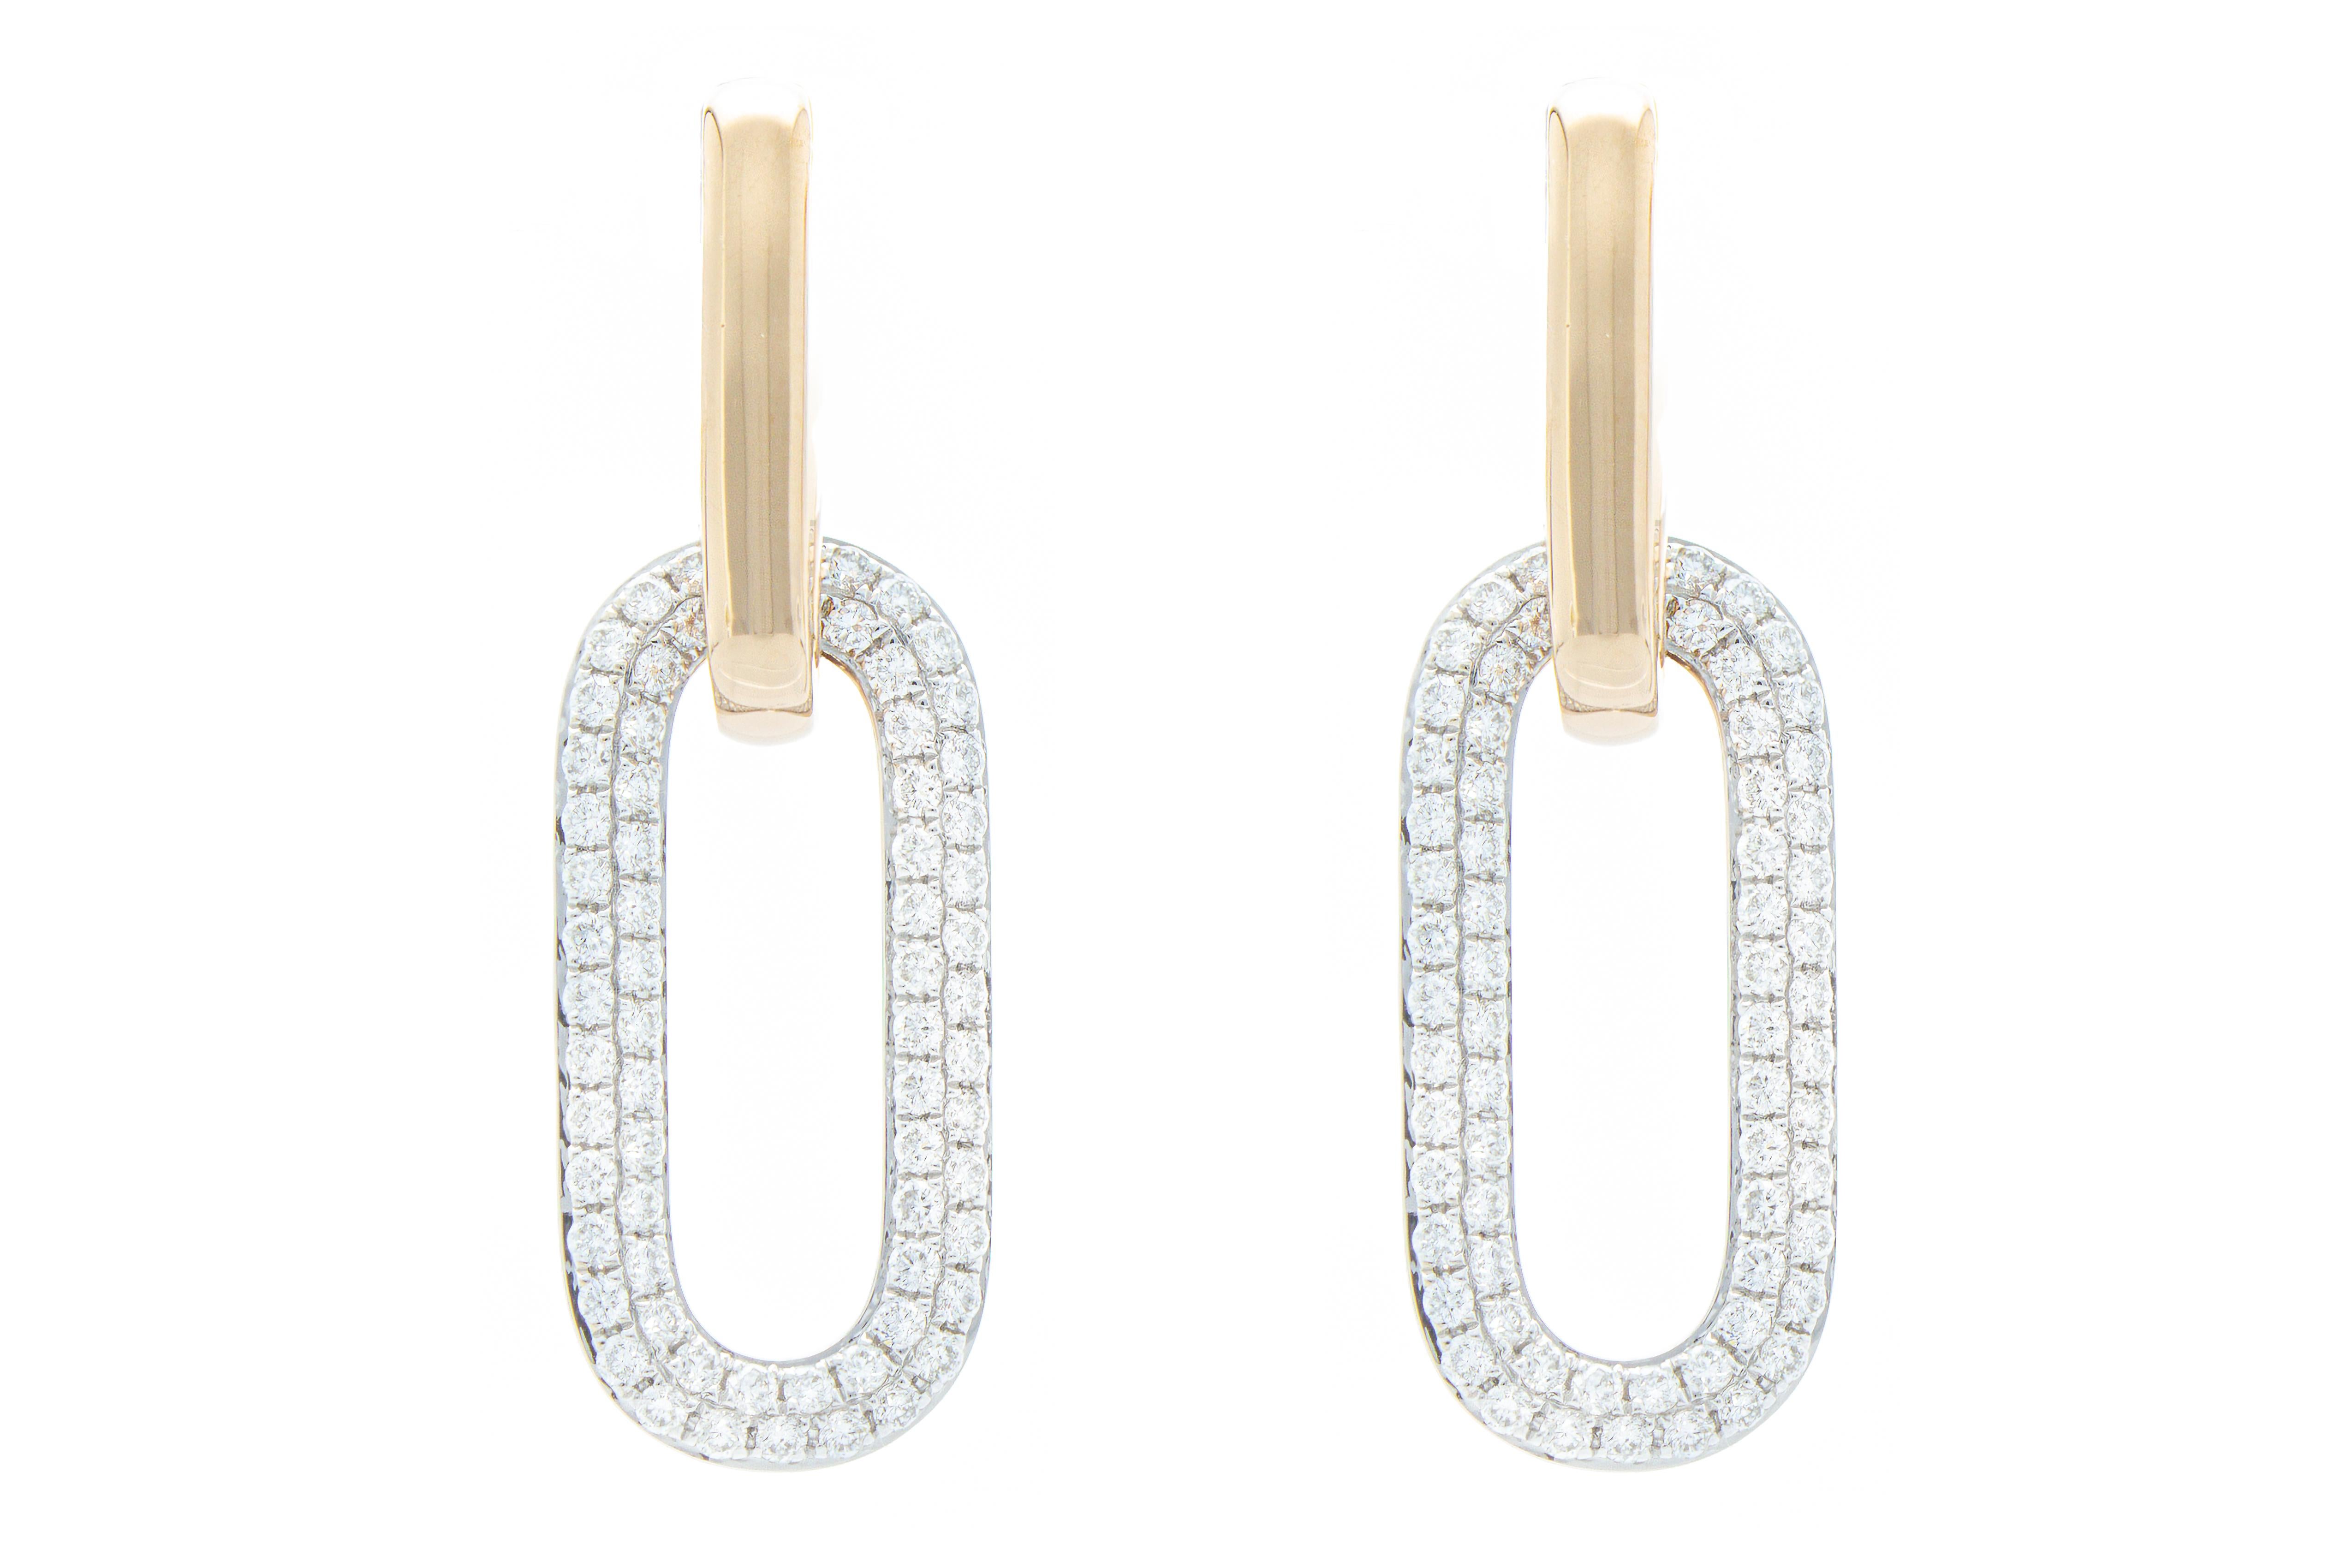 Les boucles d'oreilles du modèle pendentif sont constituées de barres reliées à des rectangles suspendus sur lesquels sont sertis des diamants taille brillant d'un poids total de 1,11 ct. 
Les boucles d'oreilles sont en or rose et blanc 18